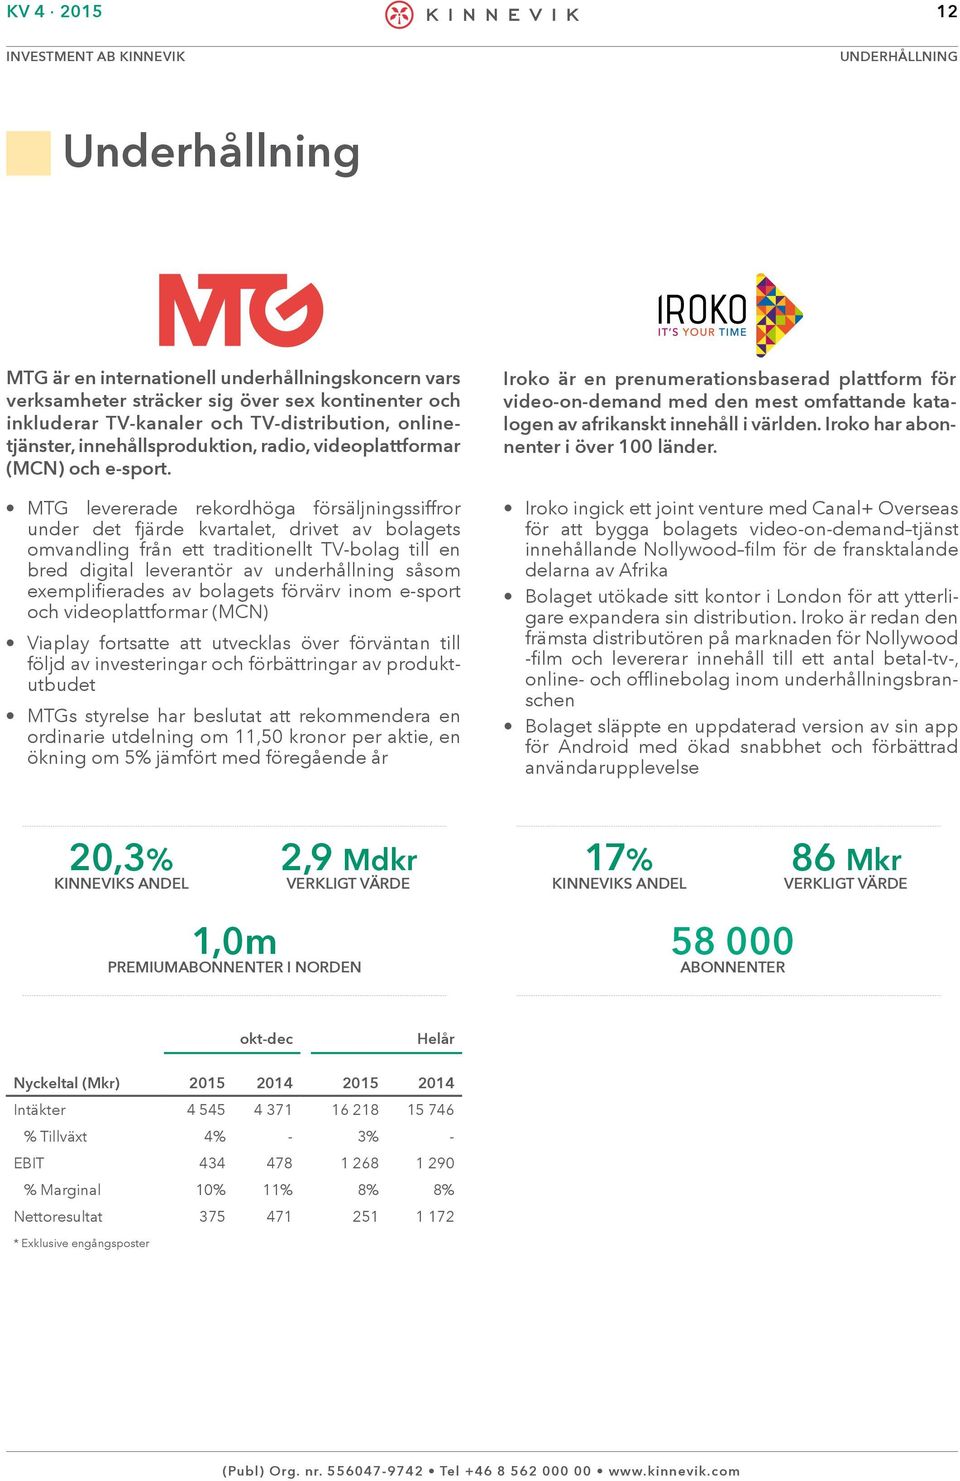 MTG levererade rekordhöga försäljningssiffror under det fjärde kvartalet, drivet av bolagets omvandling från ett traditionellt TV-bolag till en bred digital leverantör av underhållning såsom